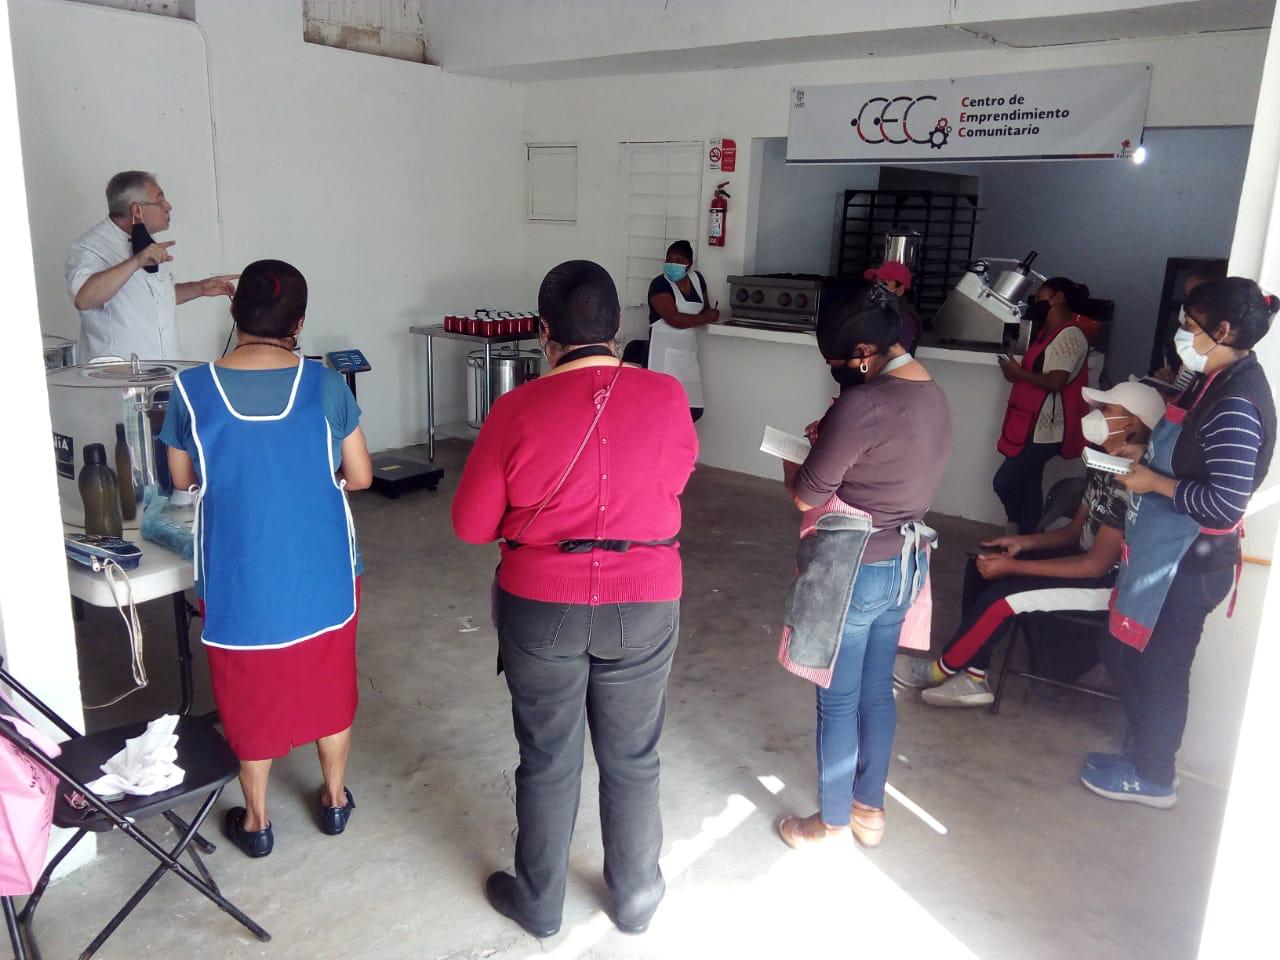 Inició actividades Centro de Emprendimiento Comunitario, en Xalapa